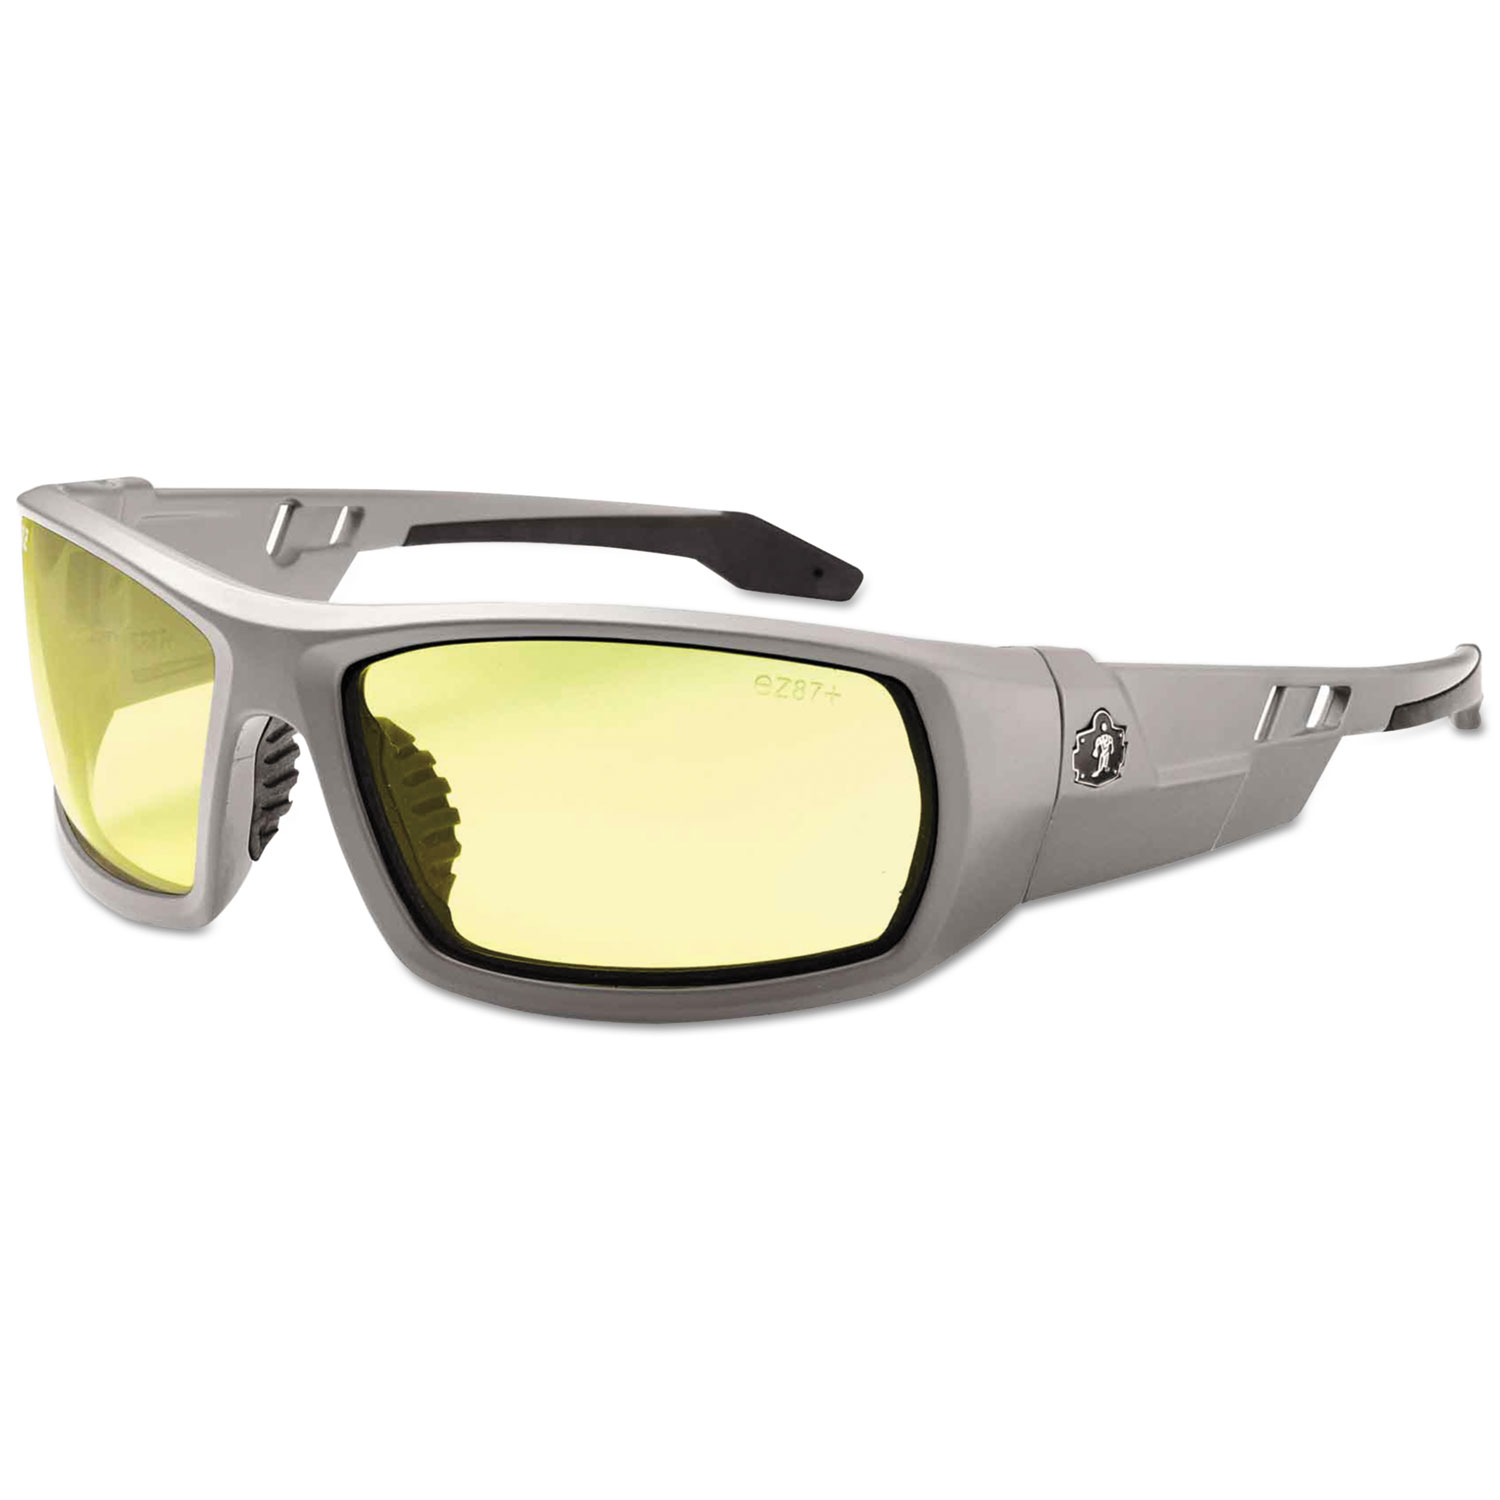 Skullerz Odin Safety Glasses, Gray Frame/Yellow Lens, Nylon/Polycarb